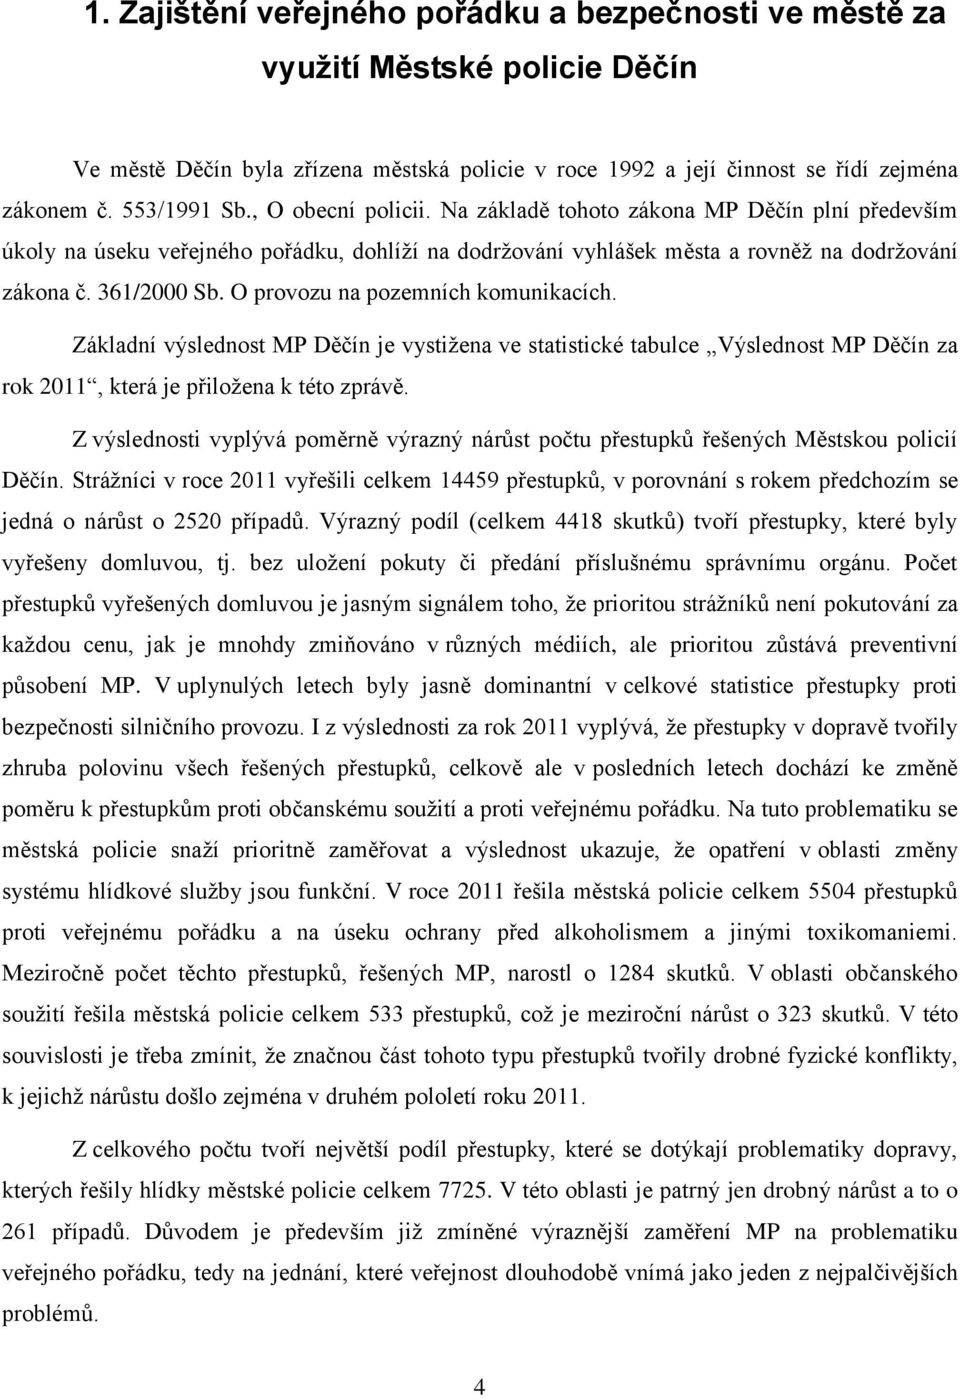 O provozu na pozemních komunikacích. Základní výslednost MP Děčín je vystižena ve statistické tabulce Výslednost MP Děčín za rok 2011, která je přiložena k této zprávě.